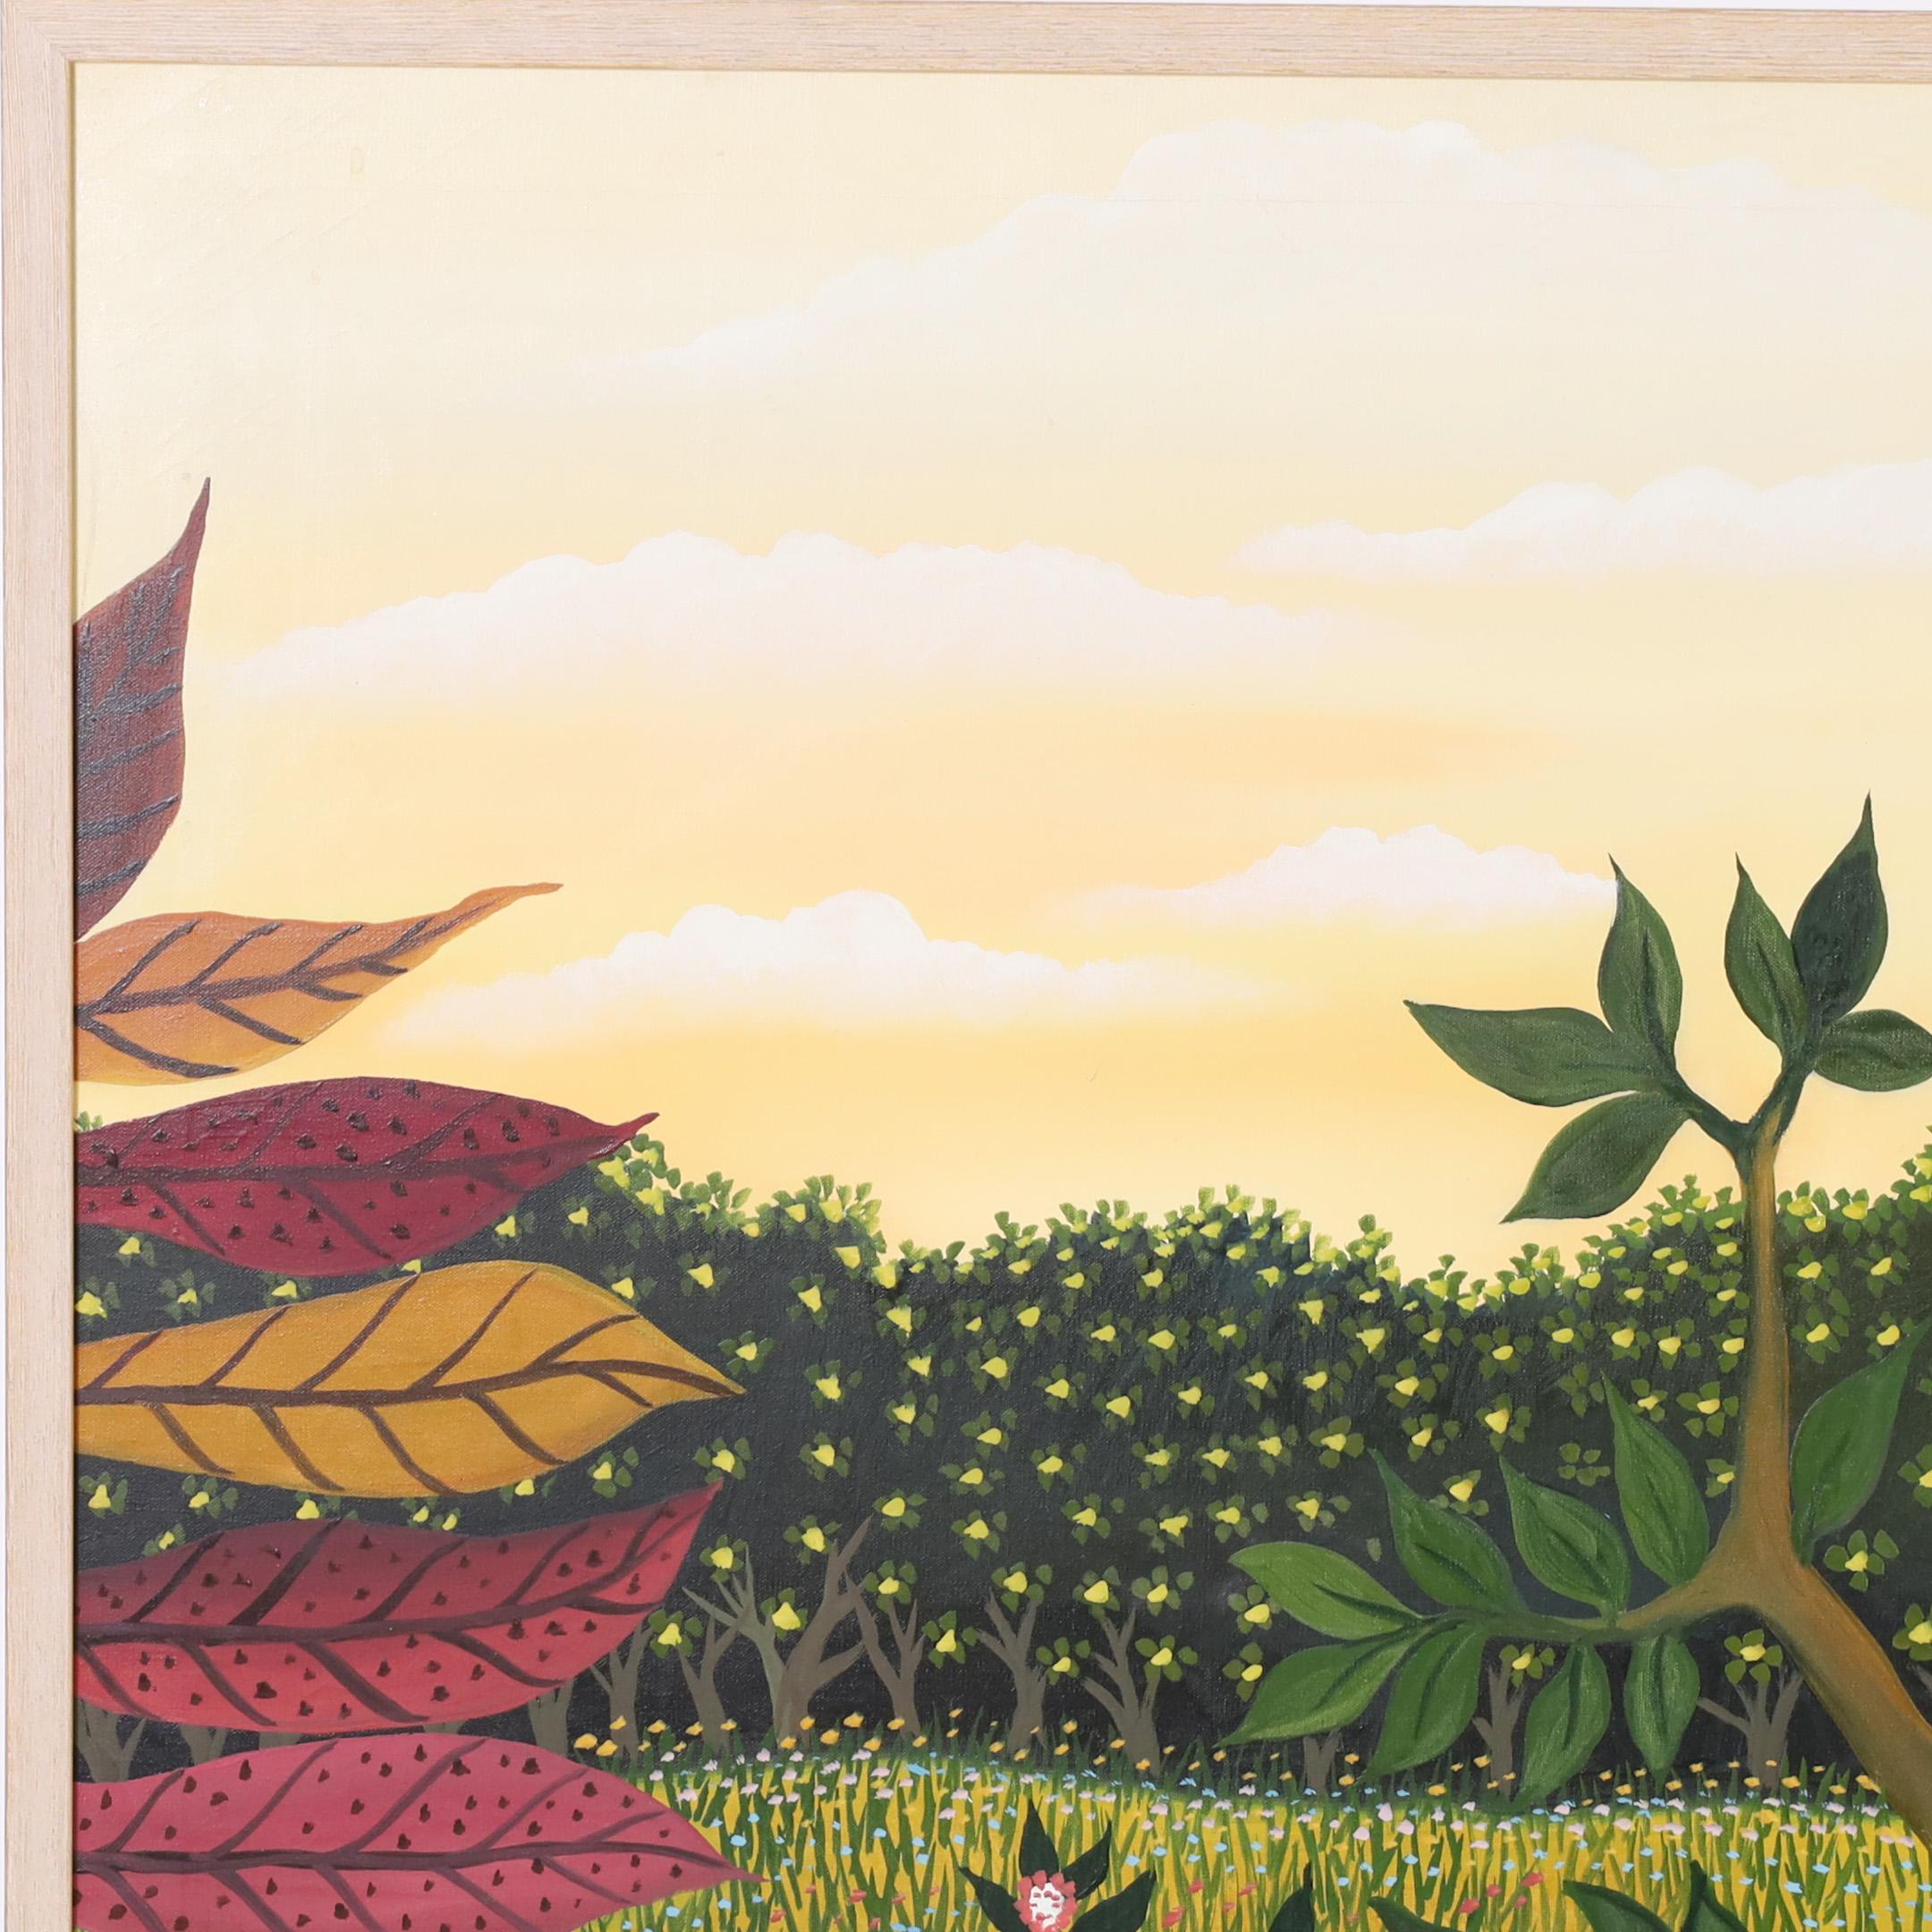 Auffälliges Vintage-Acrylgemälde auf Leinwand mit einem liegenden Leoparden und einem Papagei in einer Dschungellandschaft mit tropischen Pflanzen, ausgeführt in einem unverwechselbaren naiven Stil. Links unten signiert 